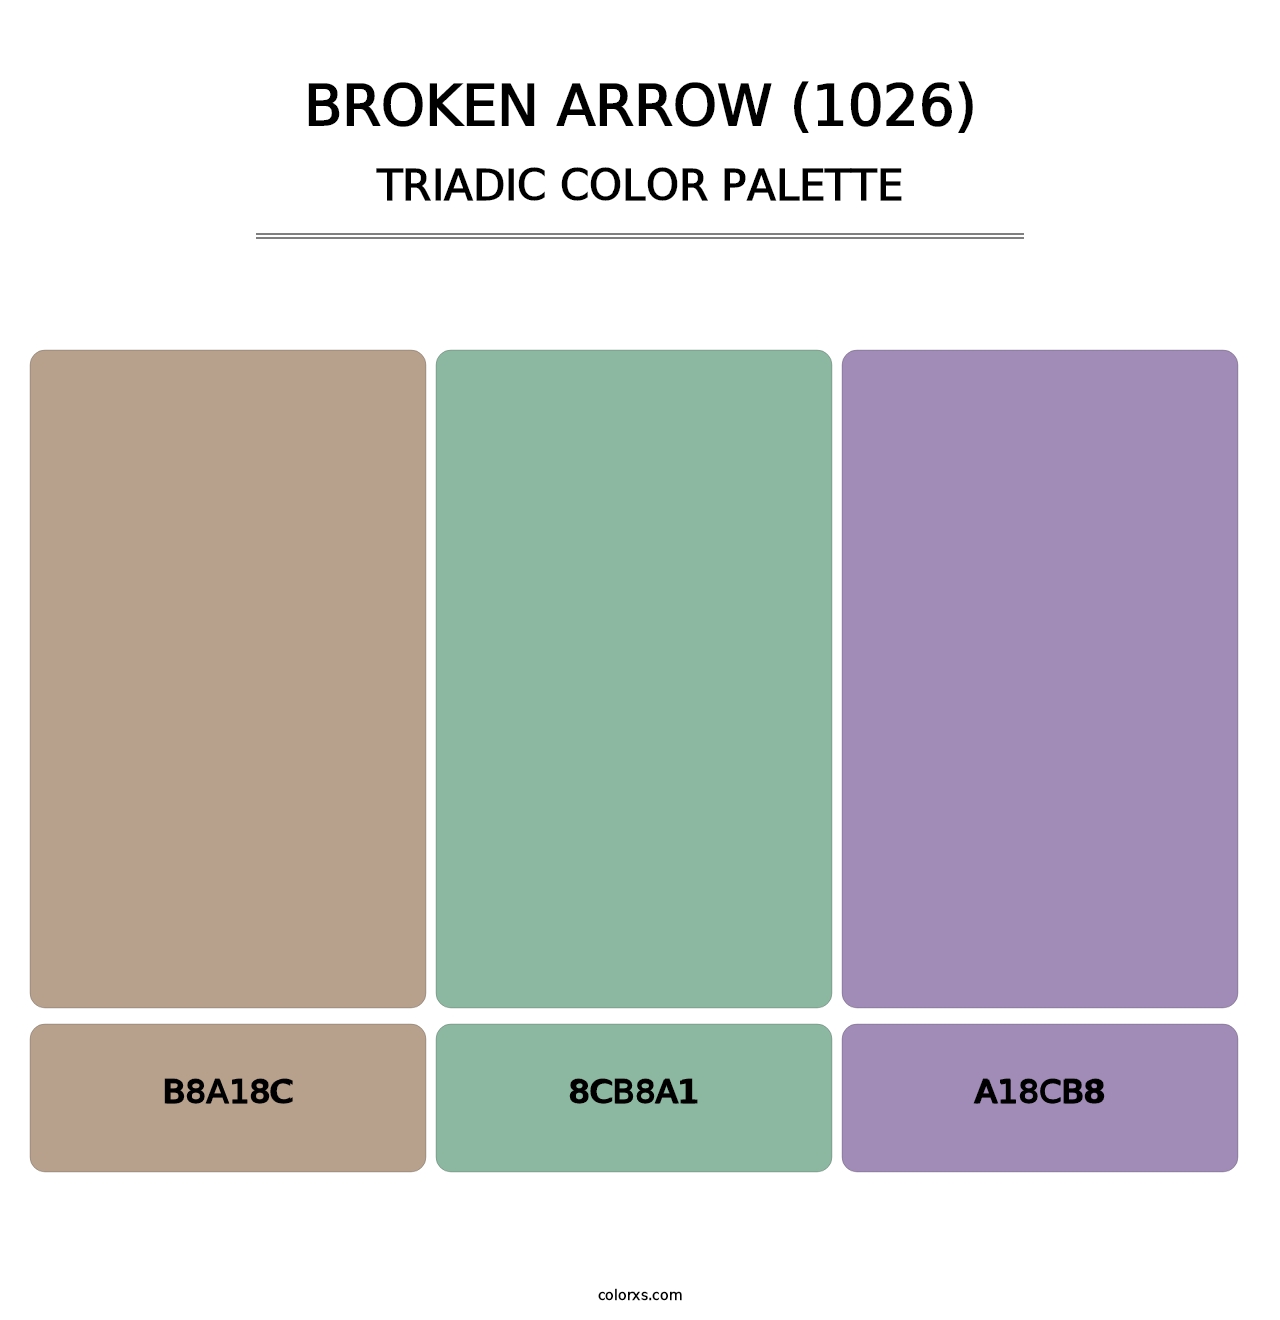 Broken Arrow (1026) - Triadic Color Palette